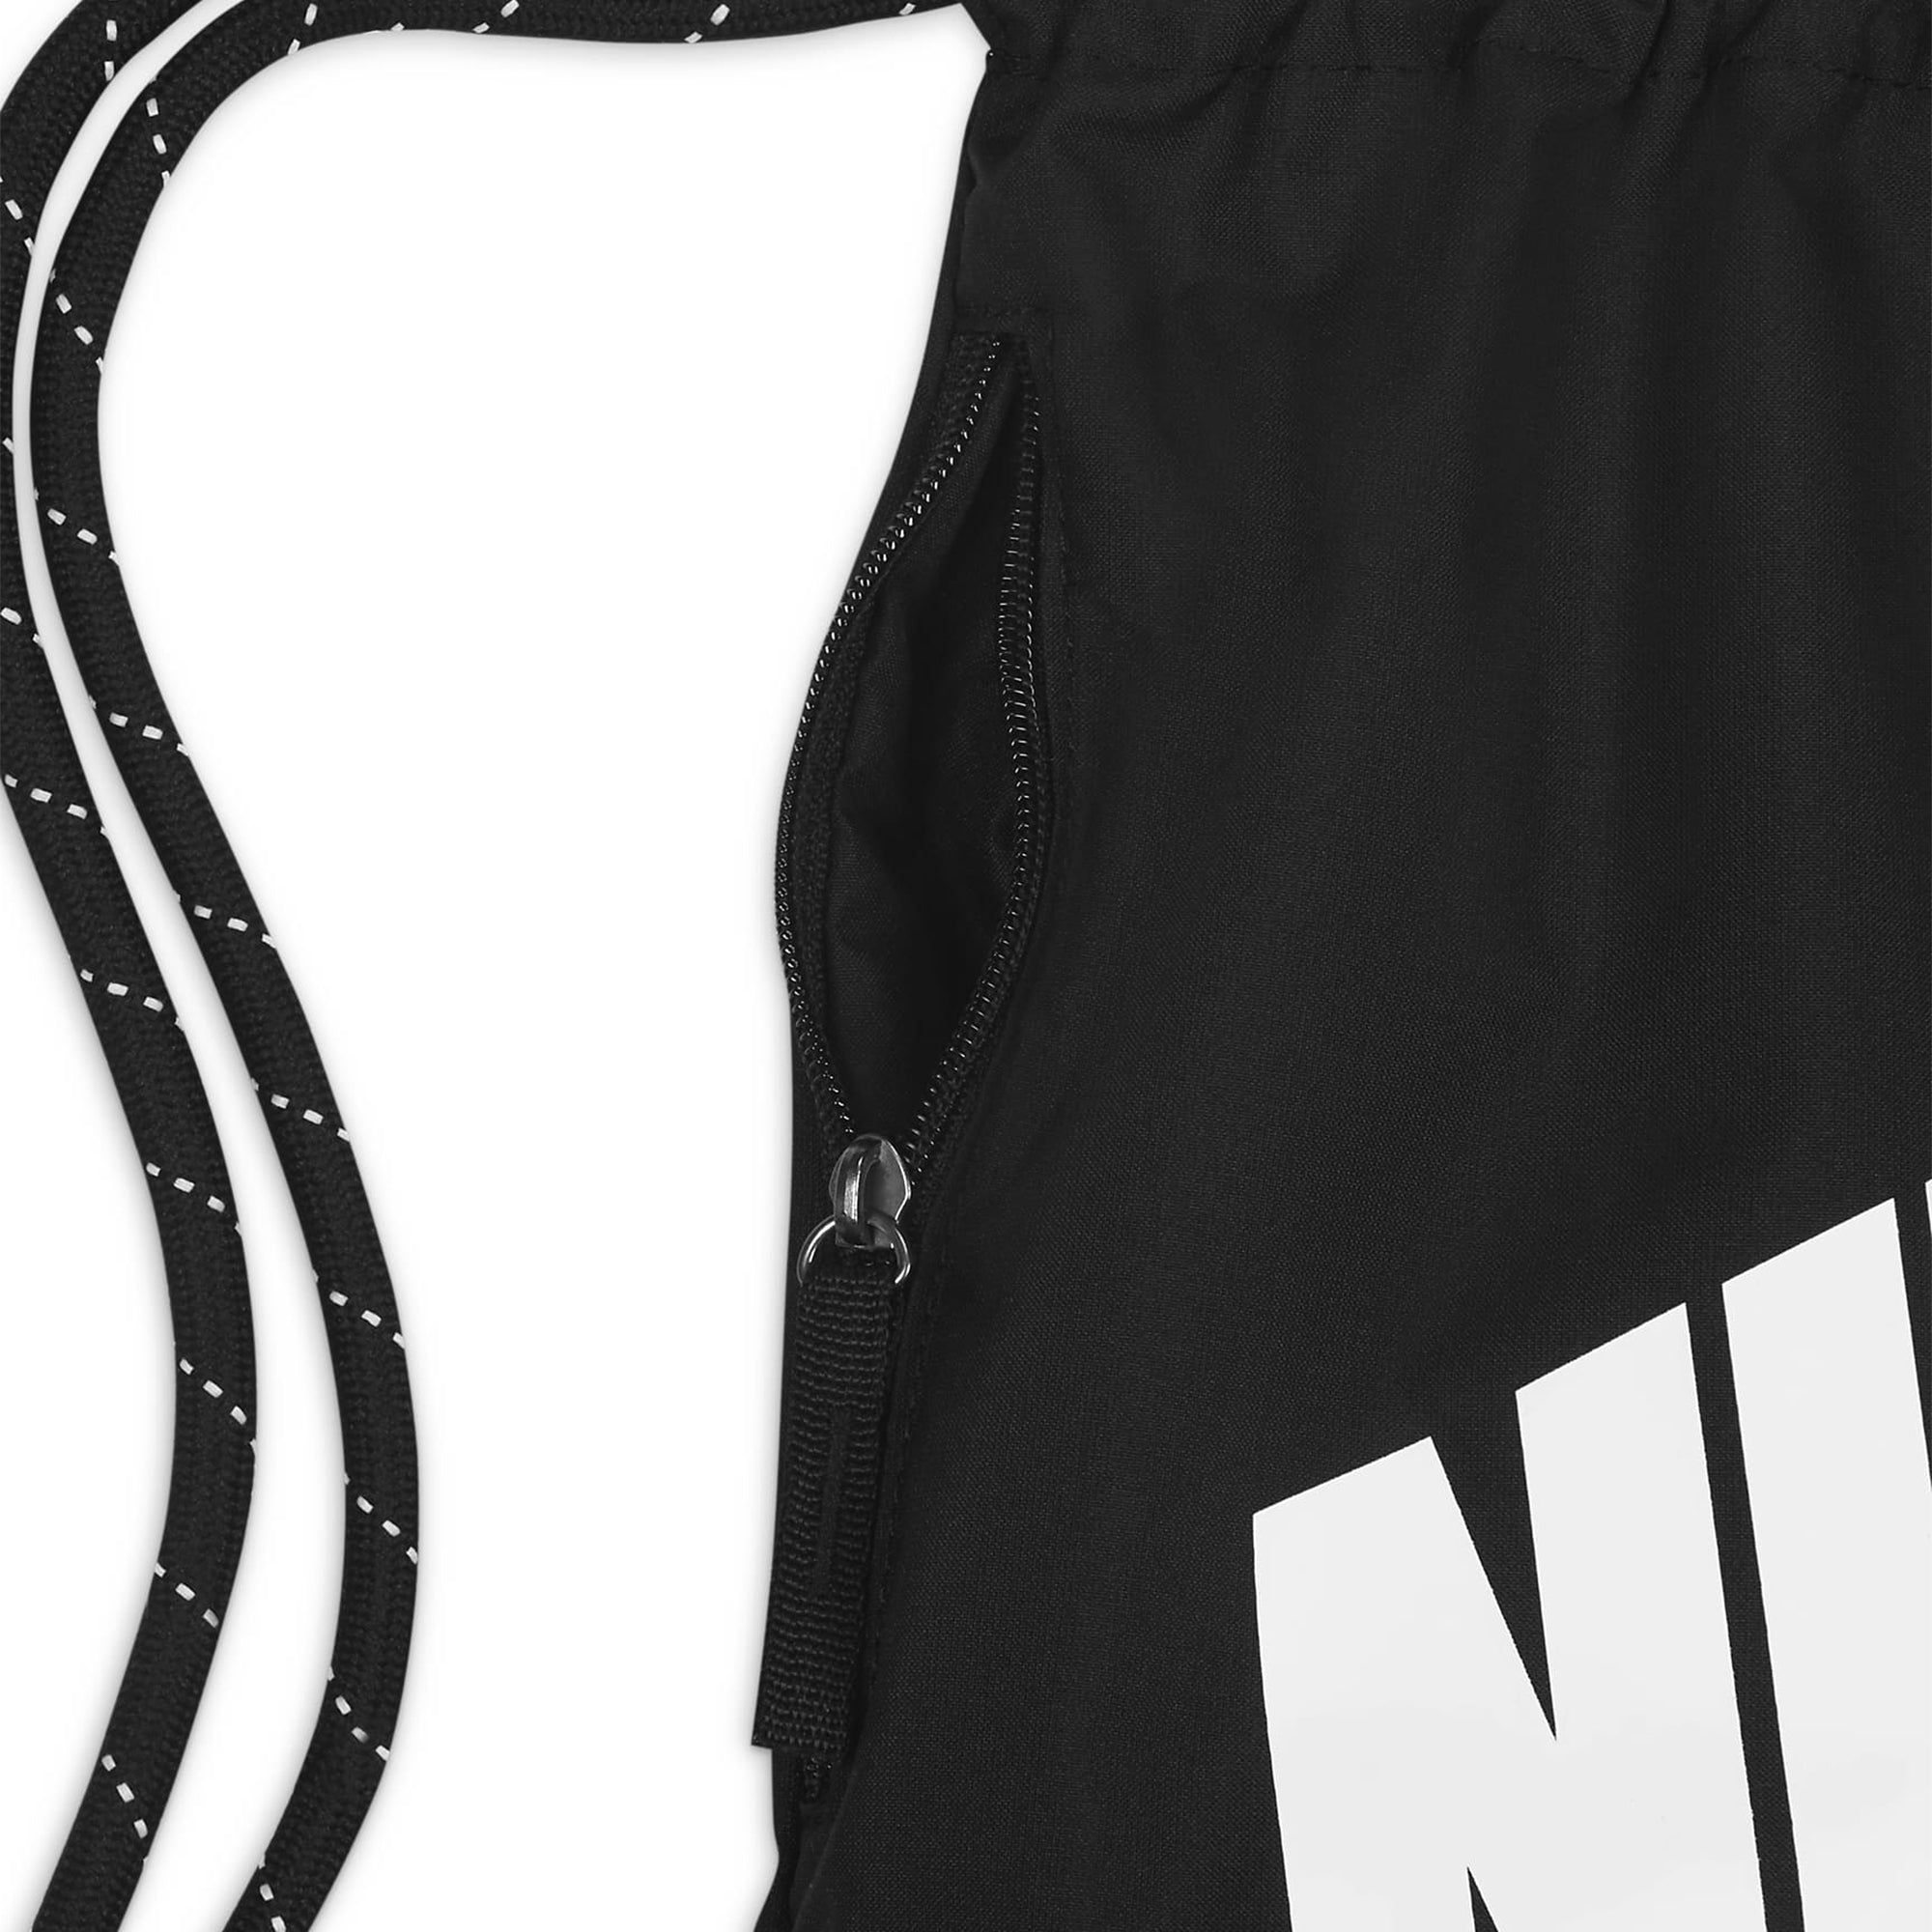 Nike Golf Heritage Drawstring Bag